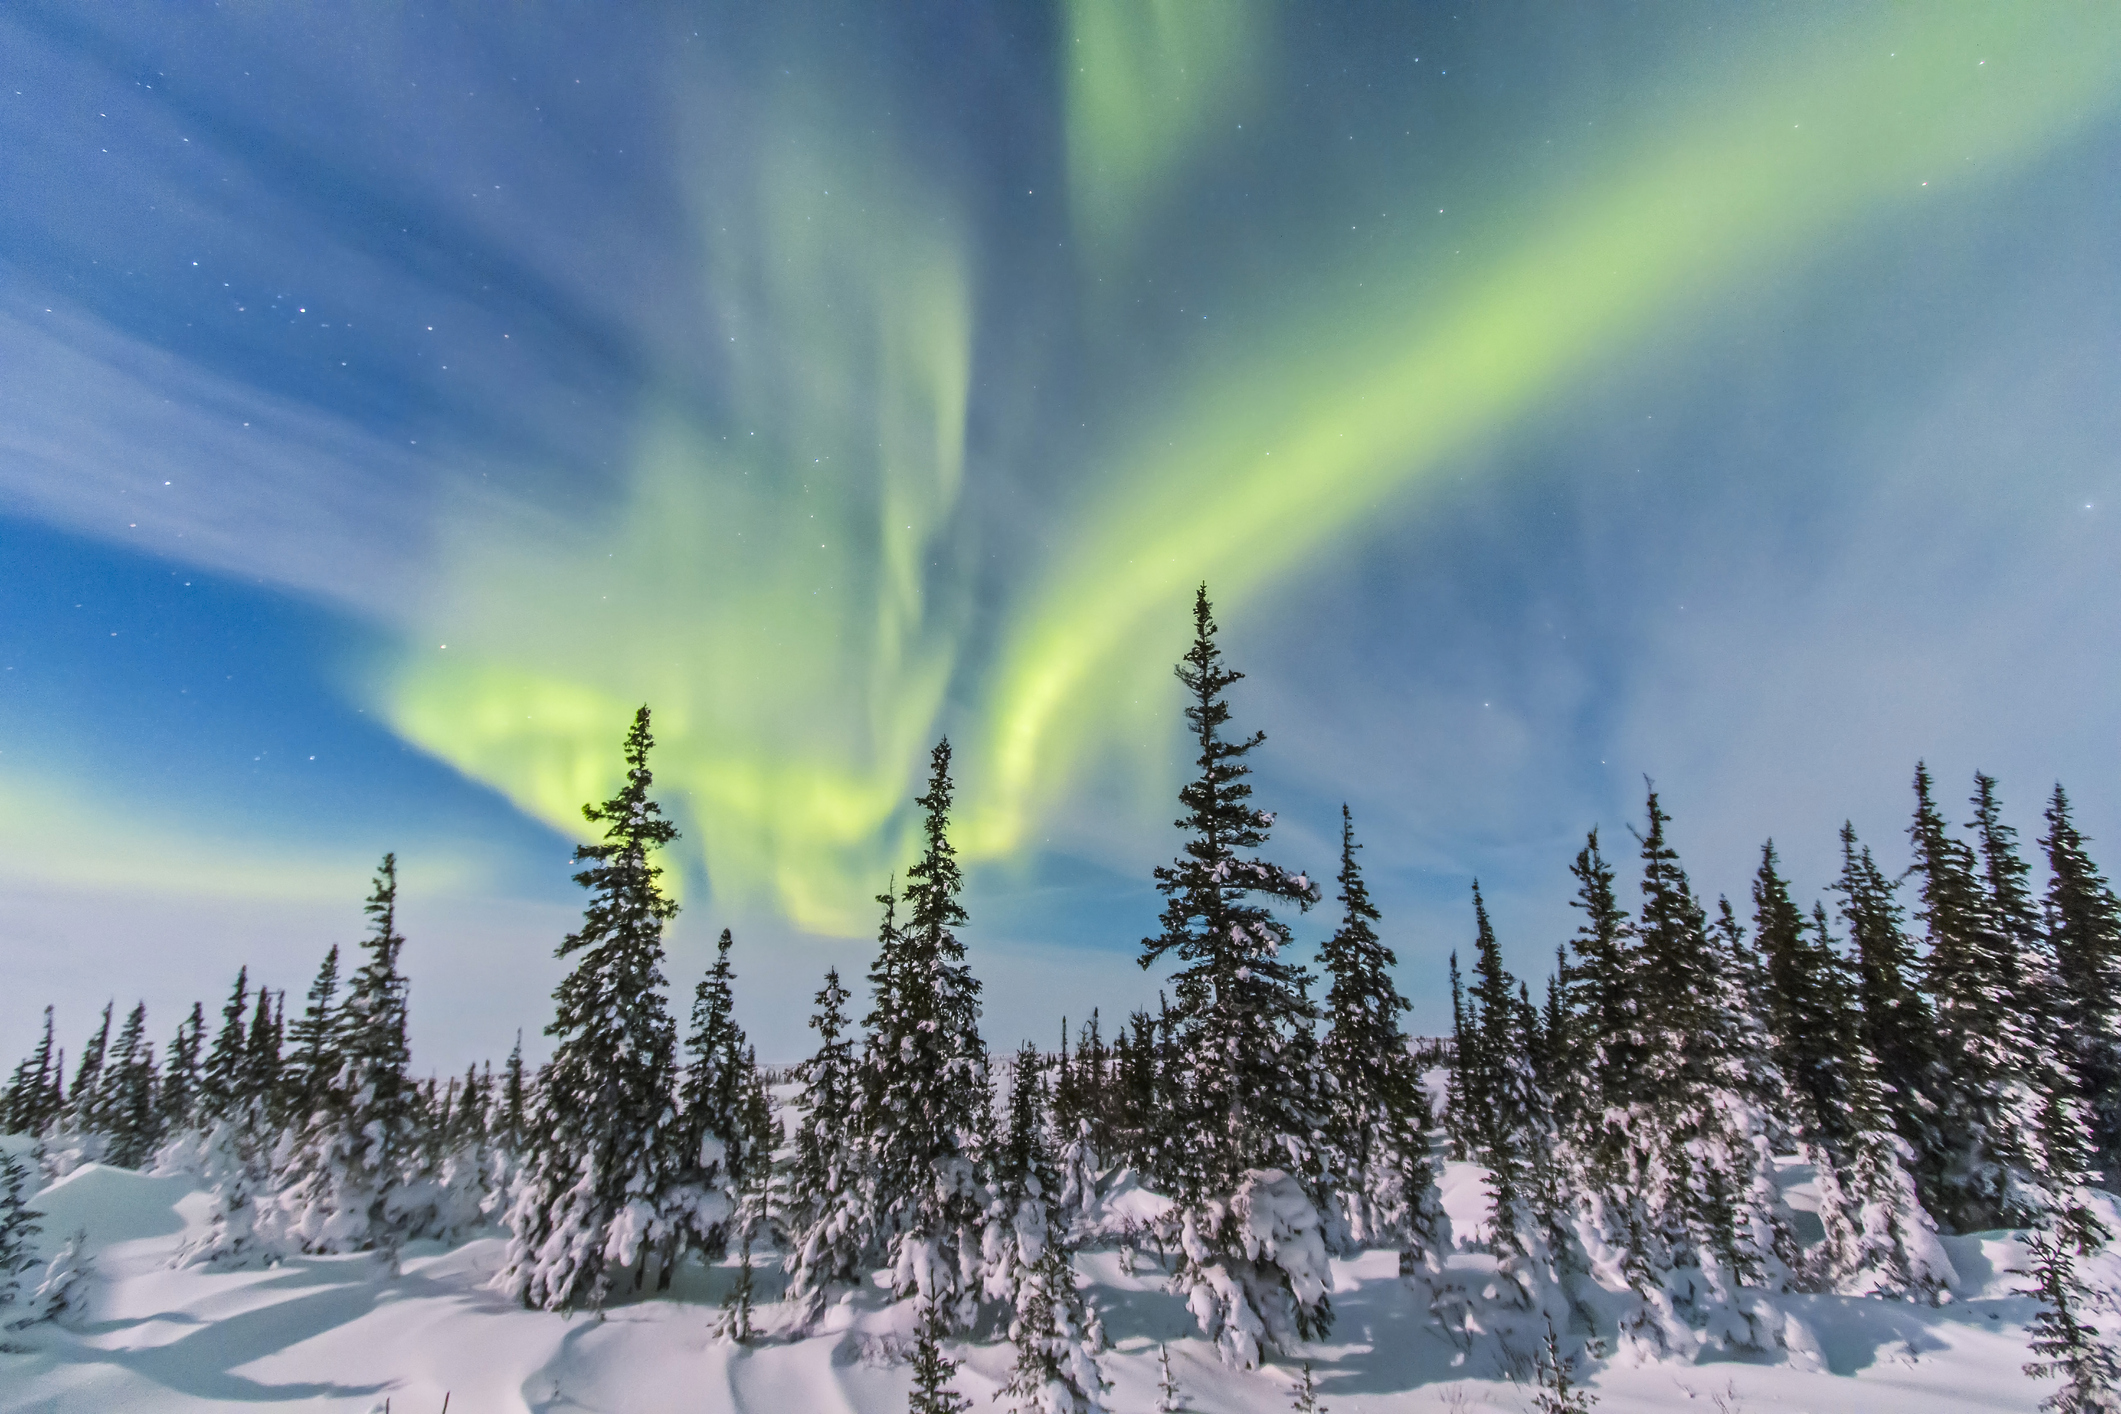 Aurora borealis over the trees in Churchill, Manitoba, Canada